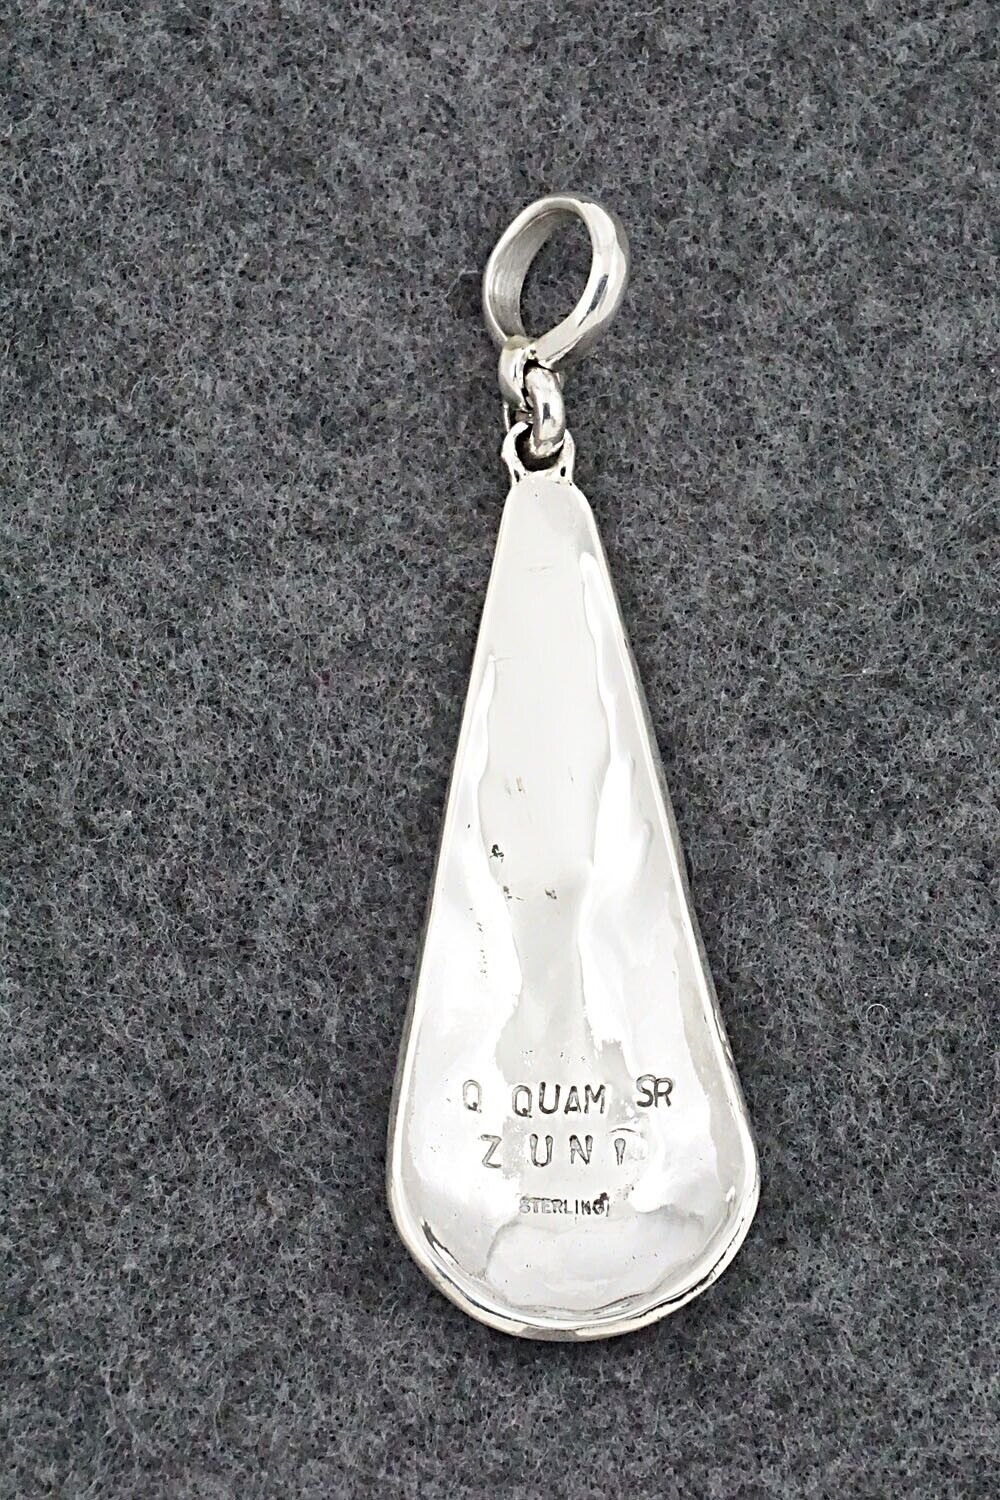 Multi-Stone & Sterling Silver Pendant - Quintin Quam Sr.